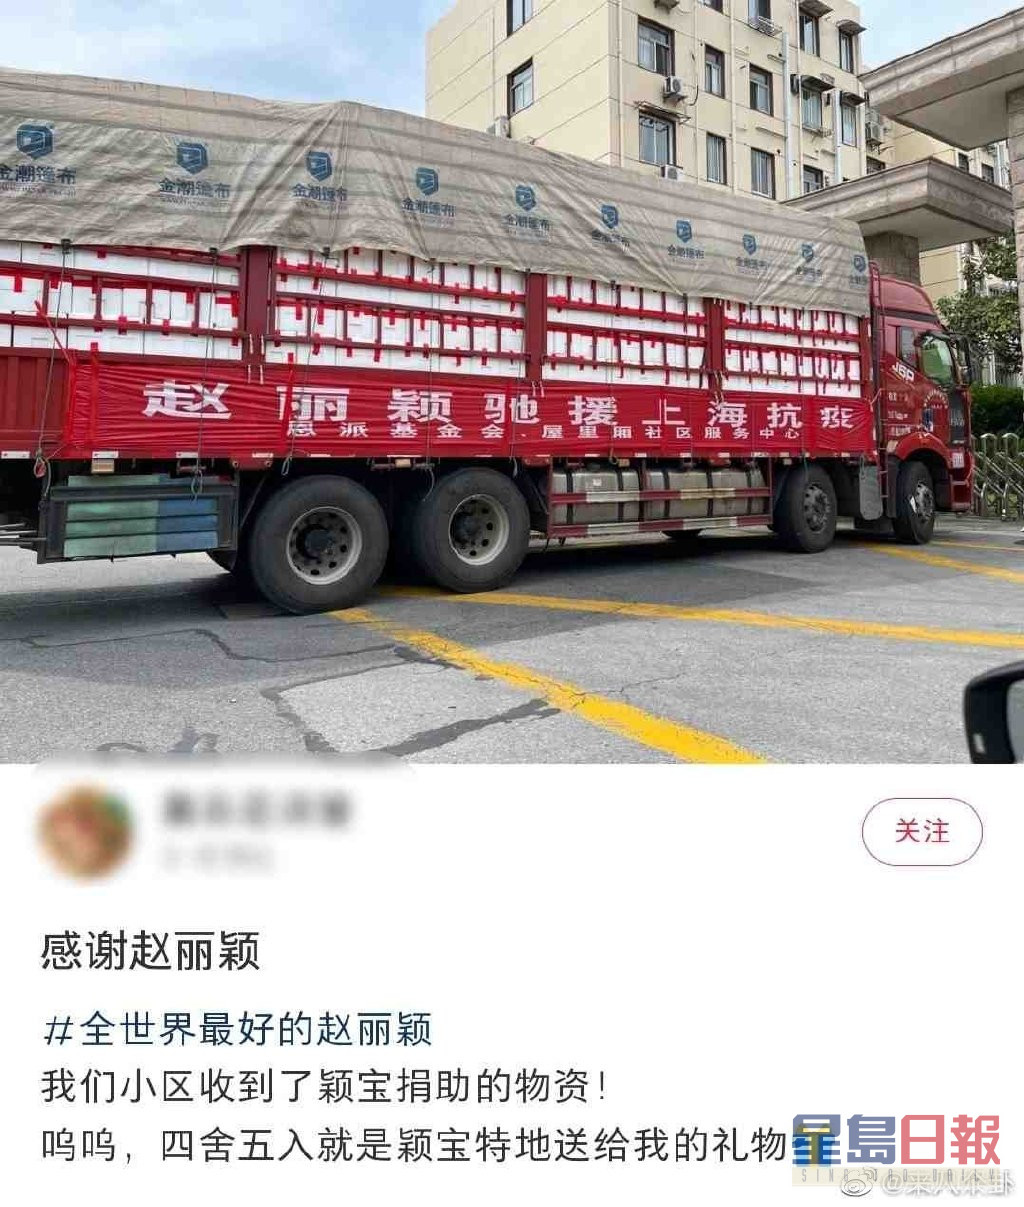 赵丽颖上周捐出物资给上海民众。